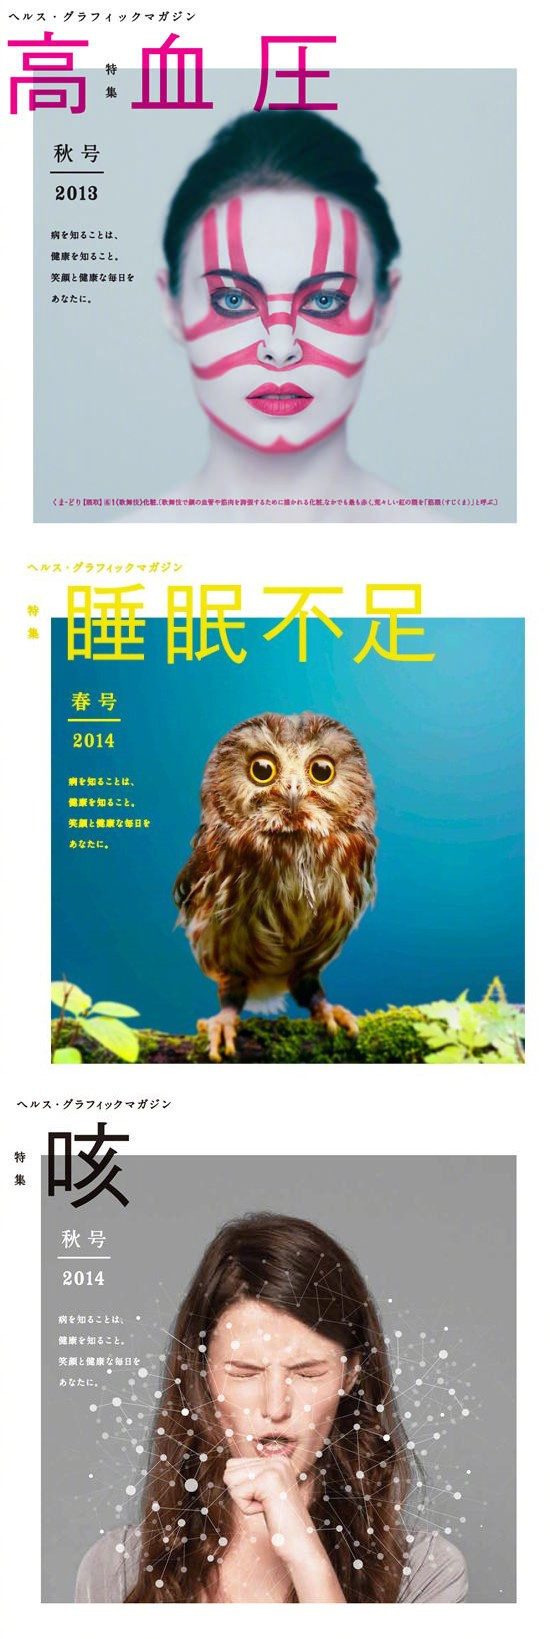 日本Aisei药局的健康杂志封面创意设计。